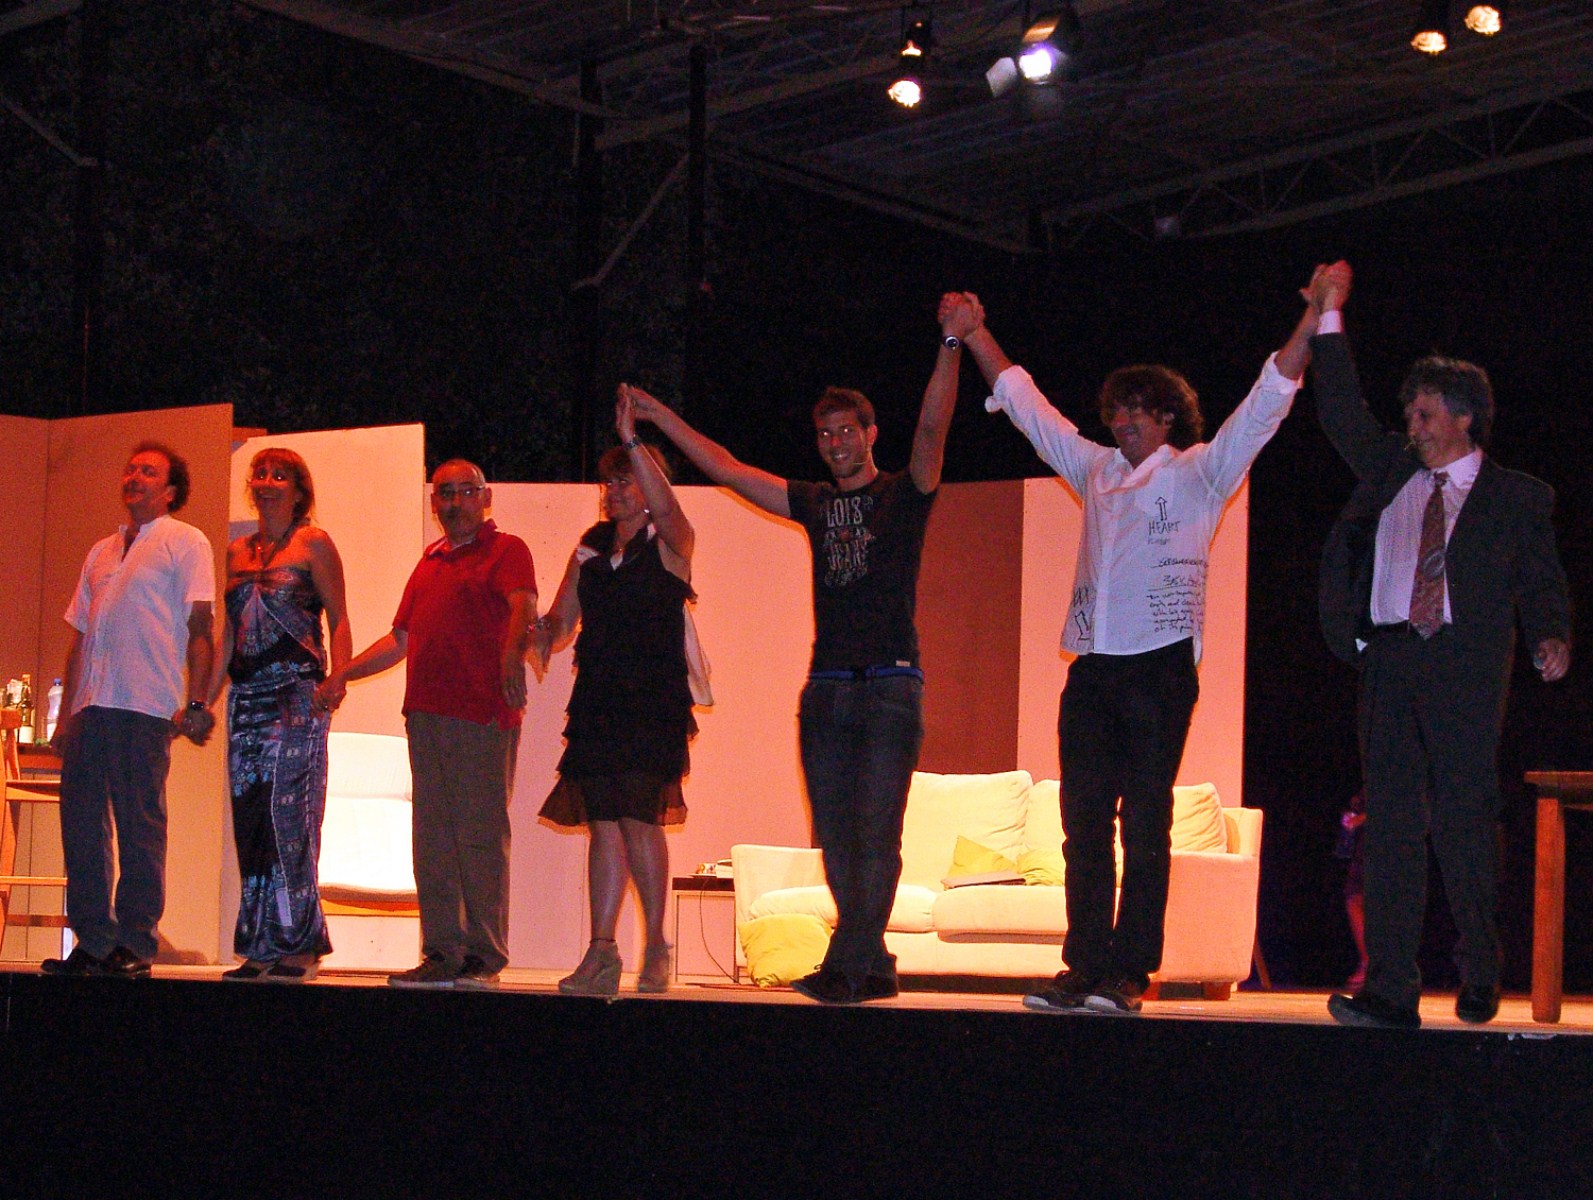 Teatre: "El sopar dels idiotes", diumenge 22 de juliol, a càrrec de la companyia Inestable d'El Casal